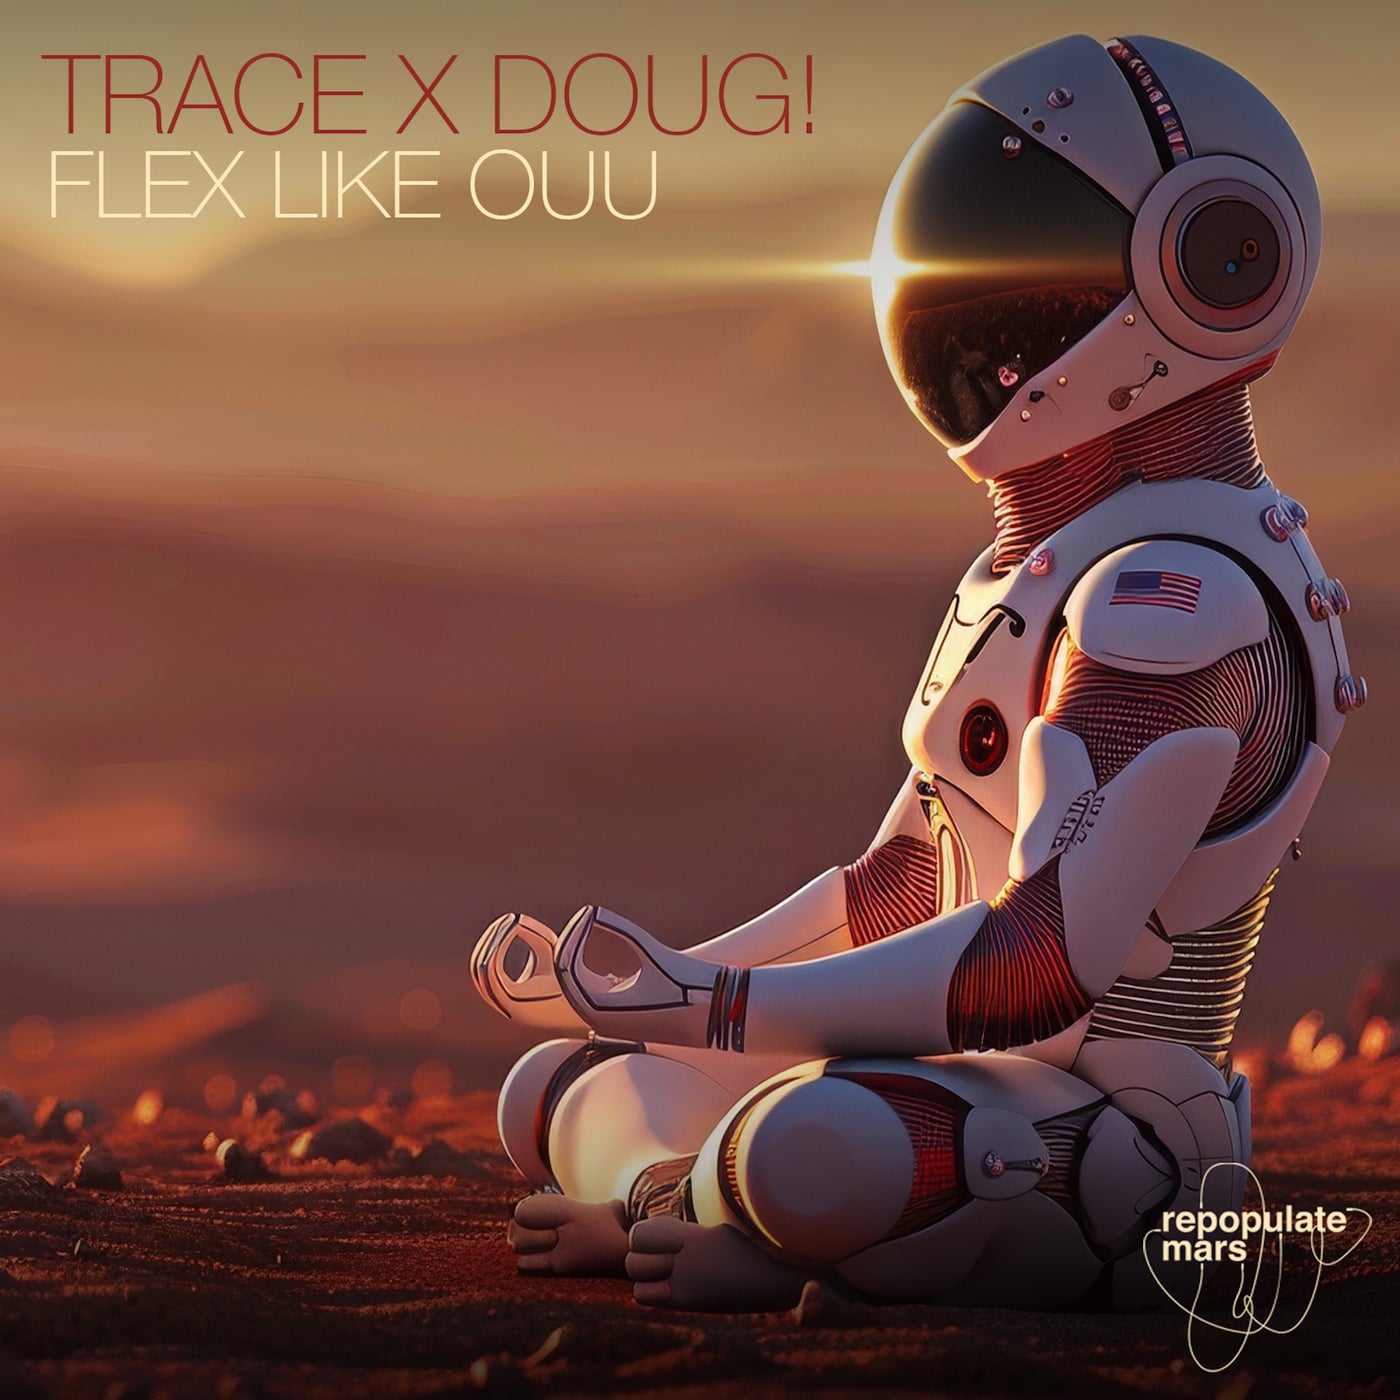 image cover: Trace, DOUG! - Flex Like Ouu on Repopulate Mars